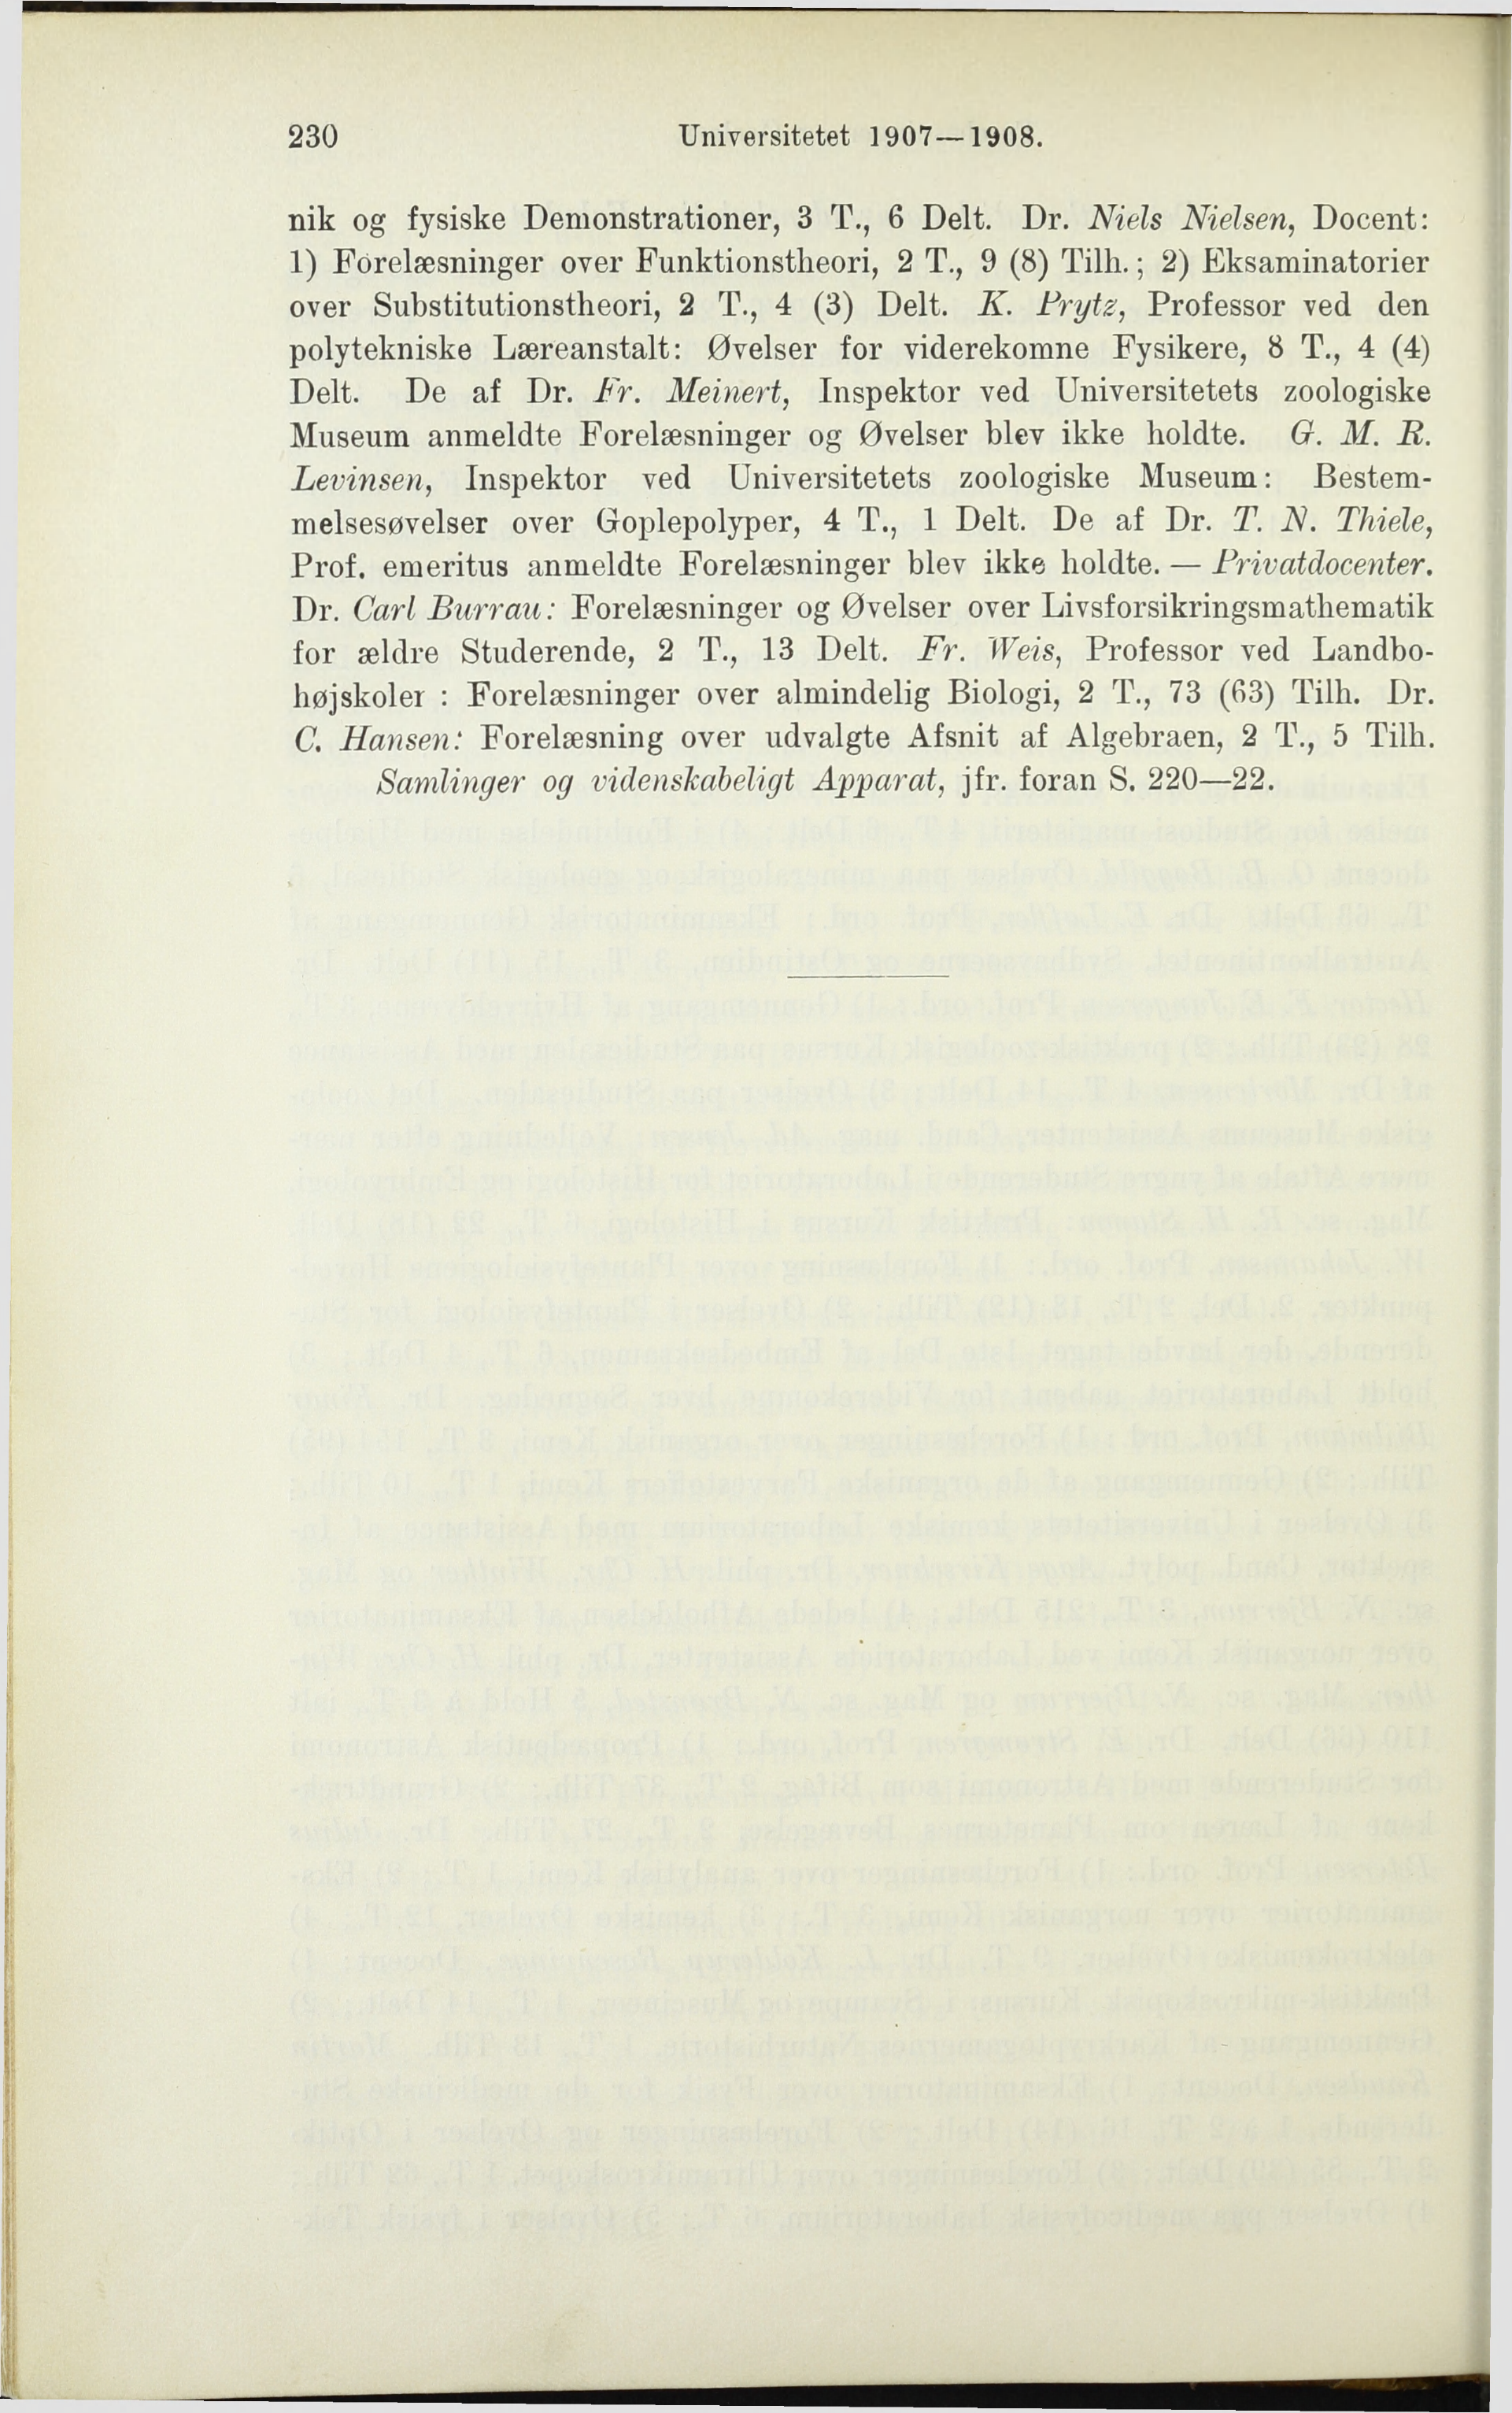 230 Universitetet 1907 1908. nik og fysiske Demonstrationer, 3 T., 6 Delt. Dr. Niels Nielsen, Docent: 1) Forelæsninger over Funktionstheori, 2 T., 9 (8) Tilh.